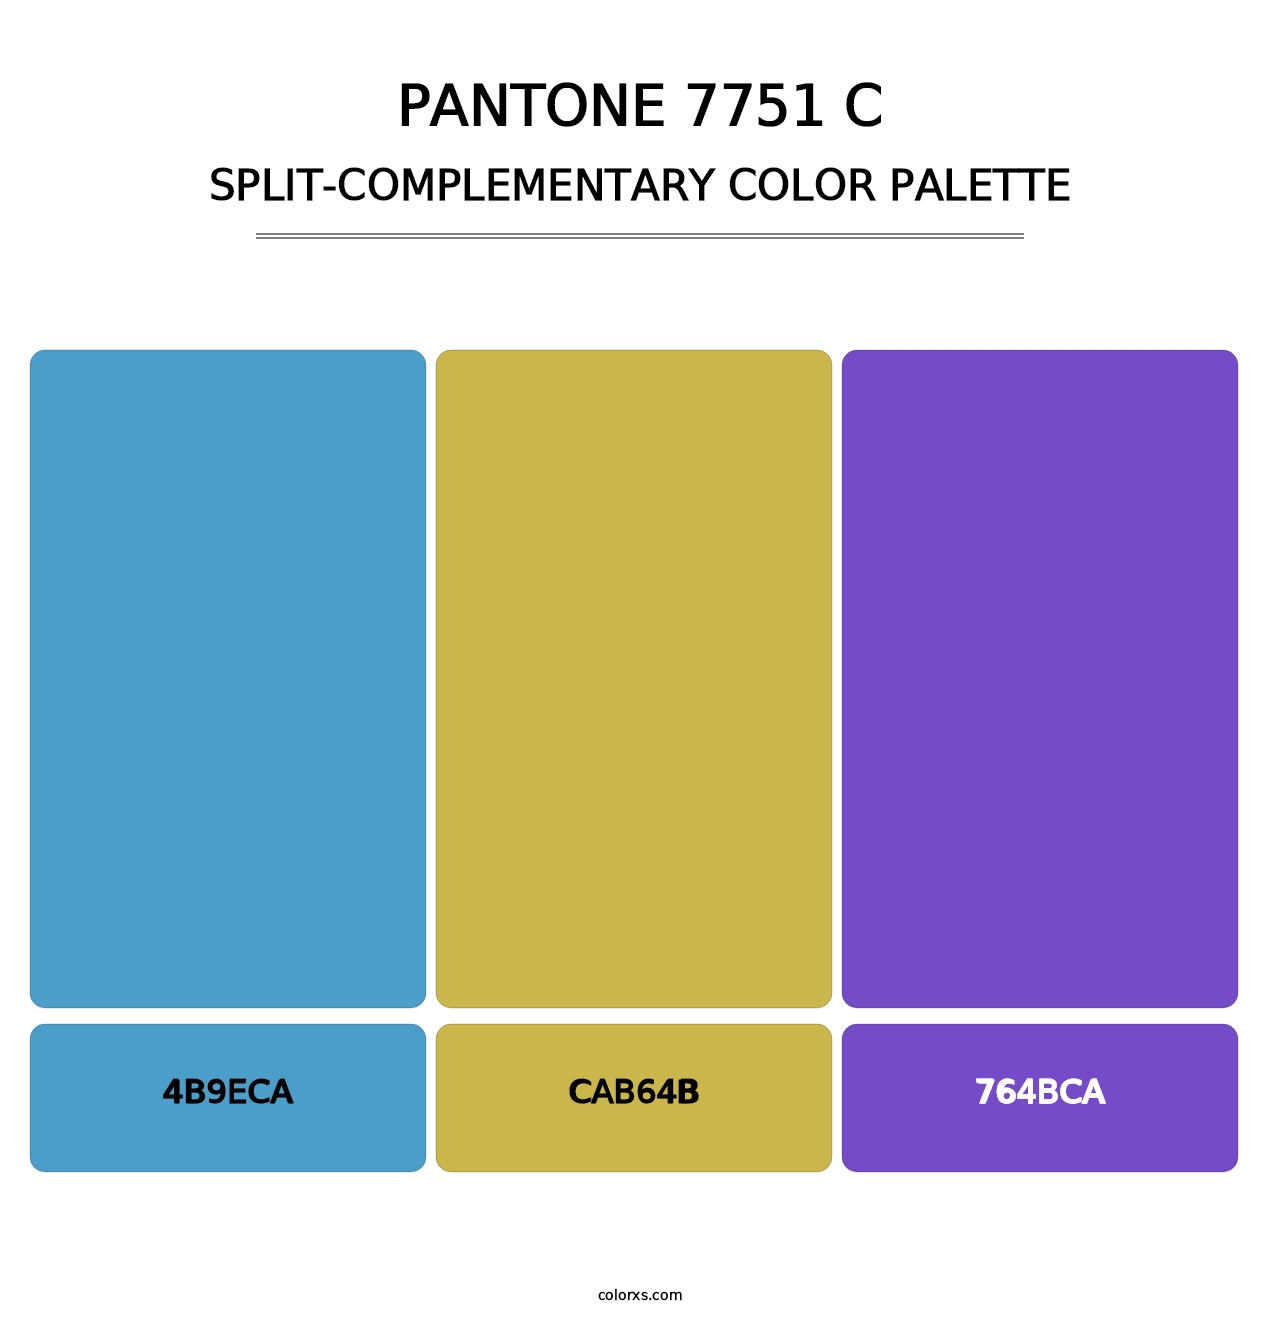 PANTONE 7751 C - Split-Complementary Color Palette